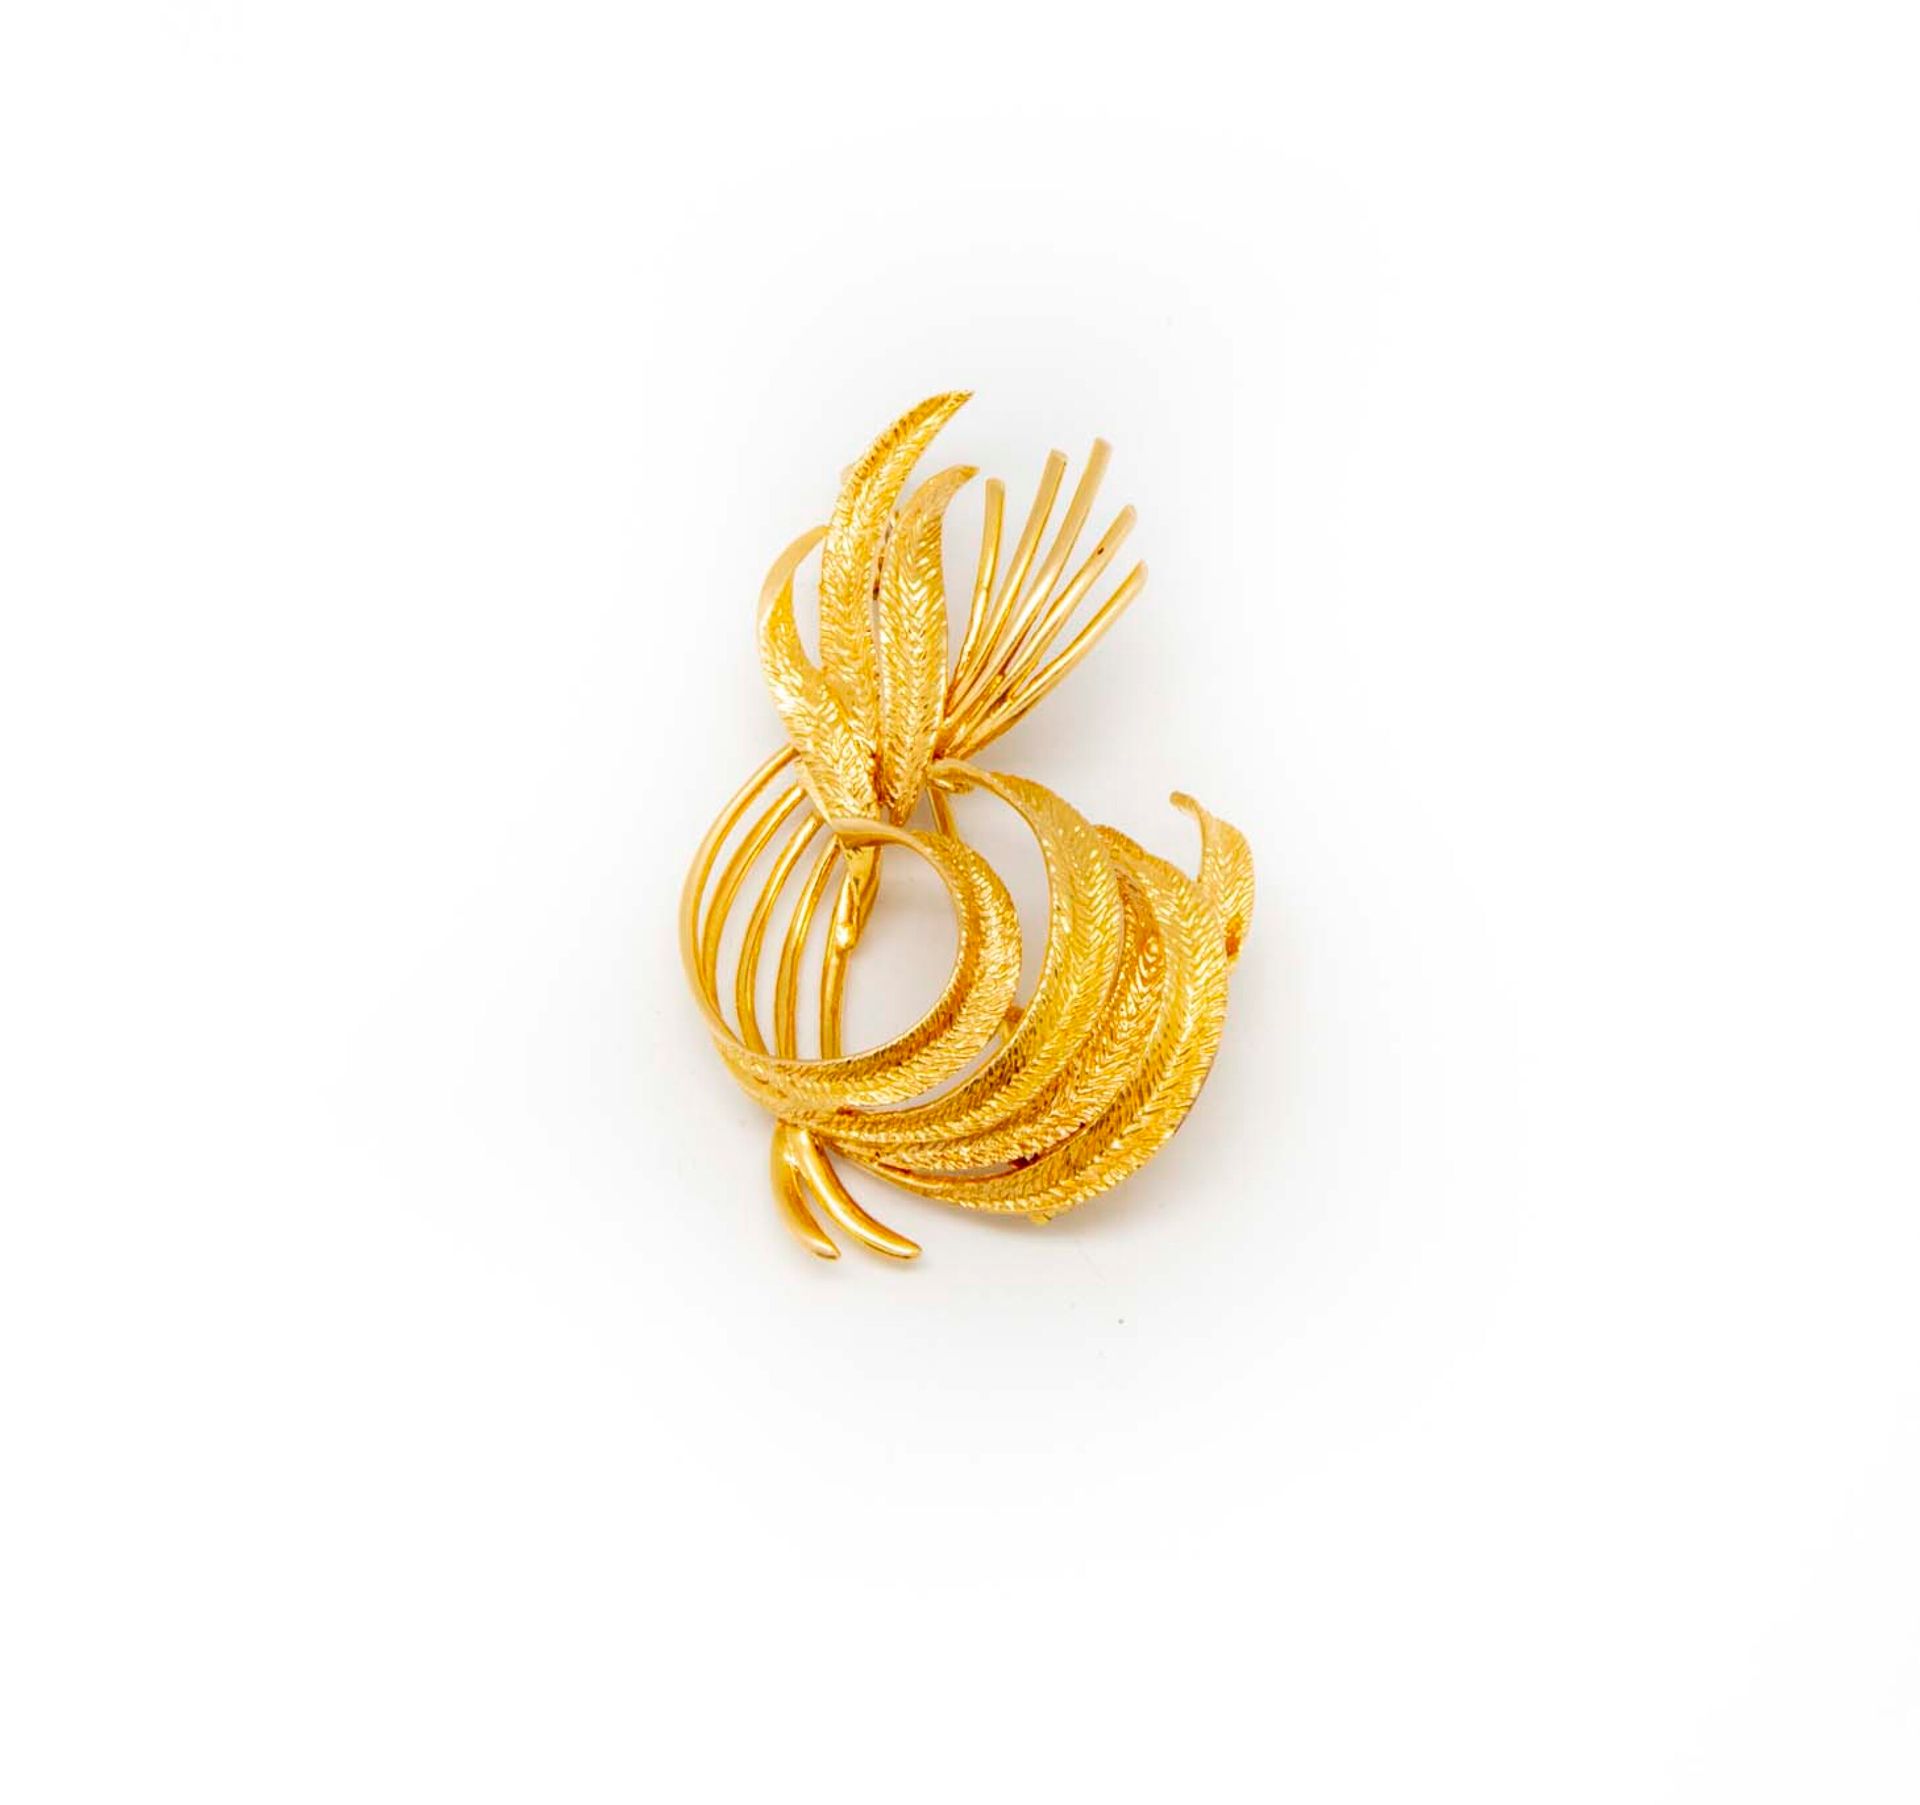 Null Broche de oro amarillo formando un follaje

Peso : 9,4 g.